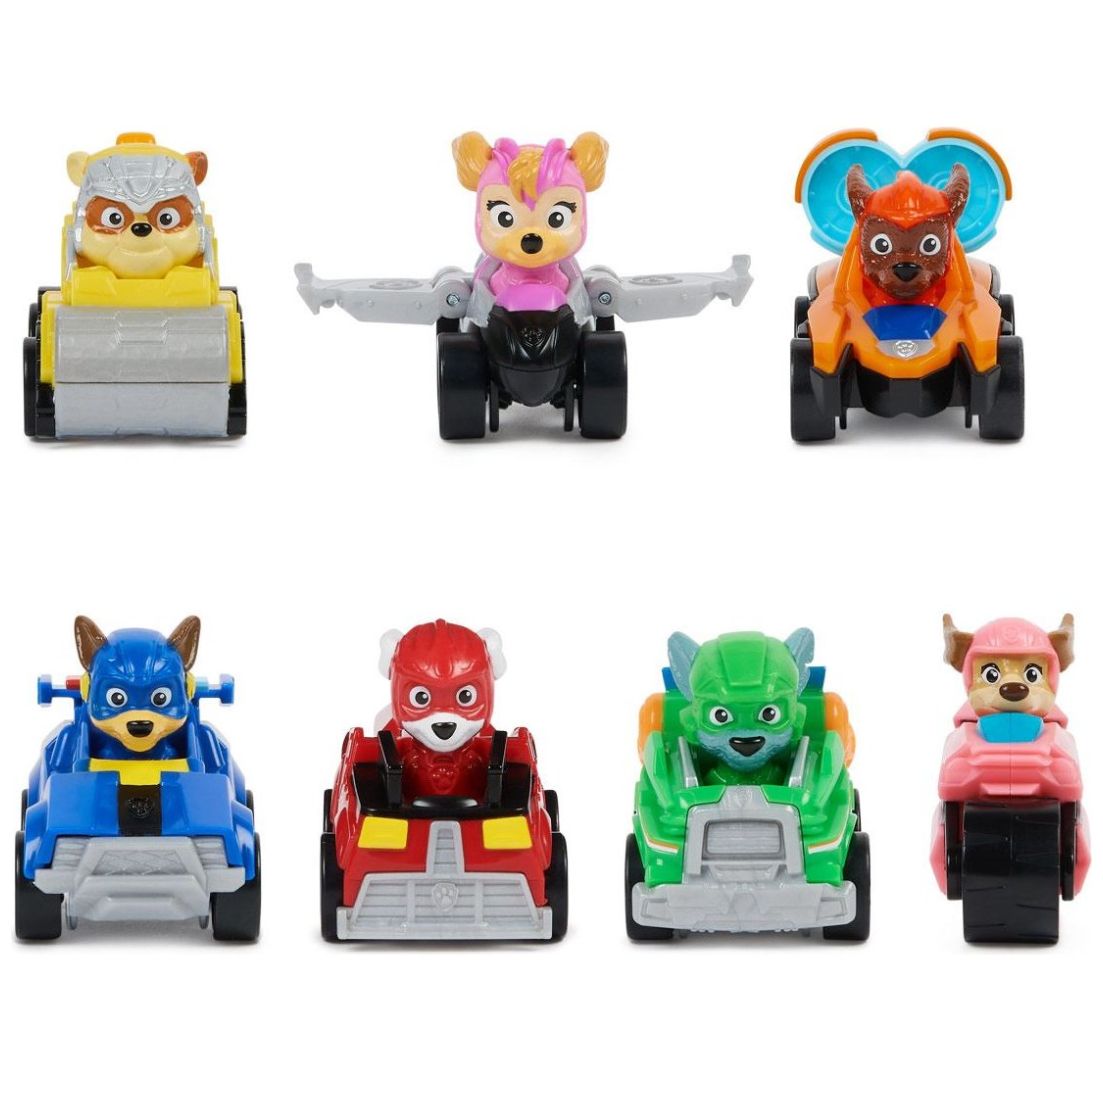 Paw Patrol: The Mighty Movie, Pup Squad Patroller camión de juguete, con  coche de juguete coleccionable Mighty Pups Chase Pup Squad, juguetes para